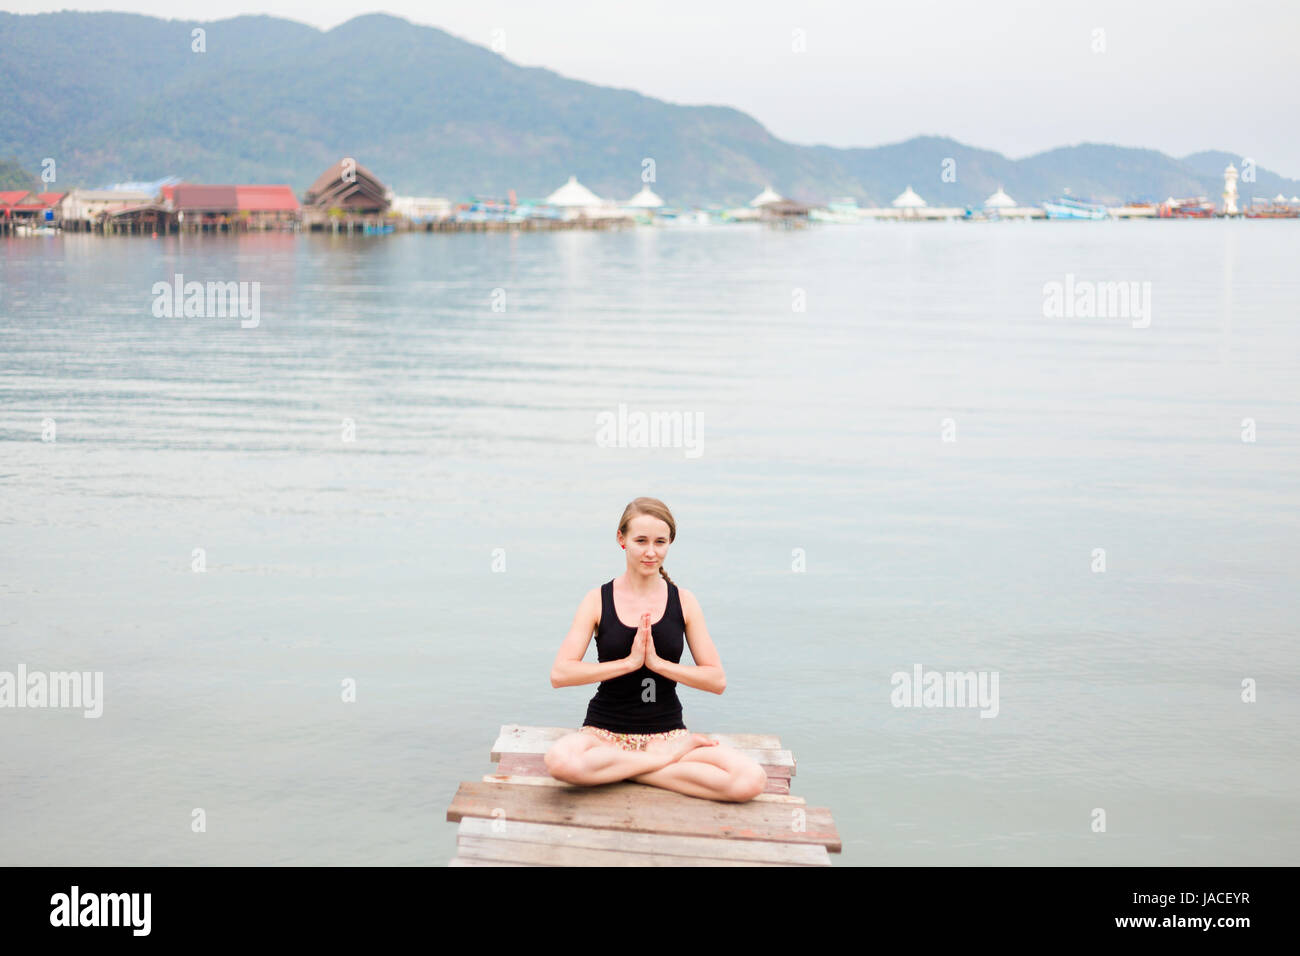 Estate sessione di yoga su un molo - Koh Chang Bang Bao fisherman village, Meditazione - lotus posano con namaste - padma asana. Attività nel sud est asiatico Foto Stock